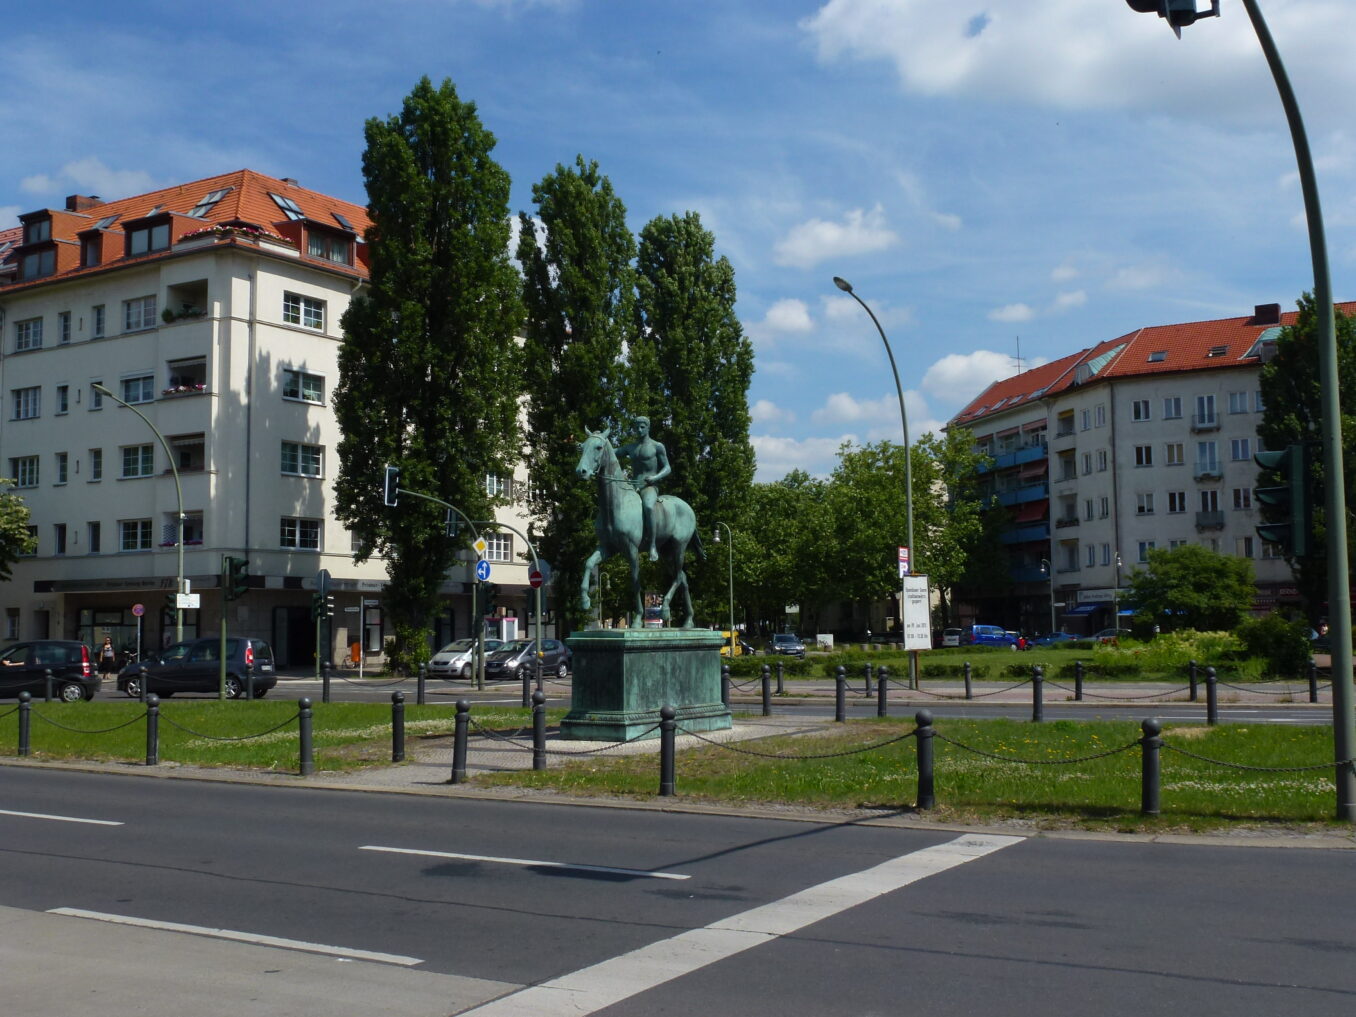 Reiterstatue auf Steubenplatz, umgeben von Wohngebäuden und Bäumen.